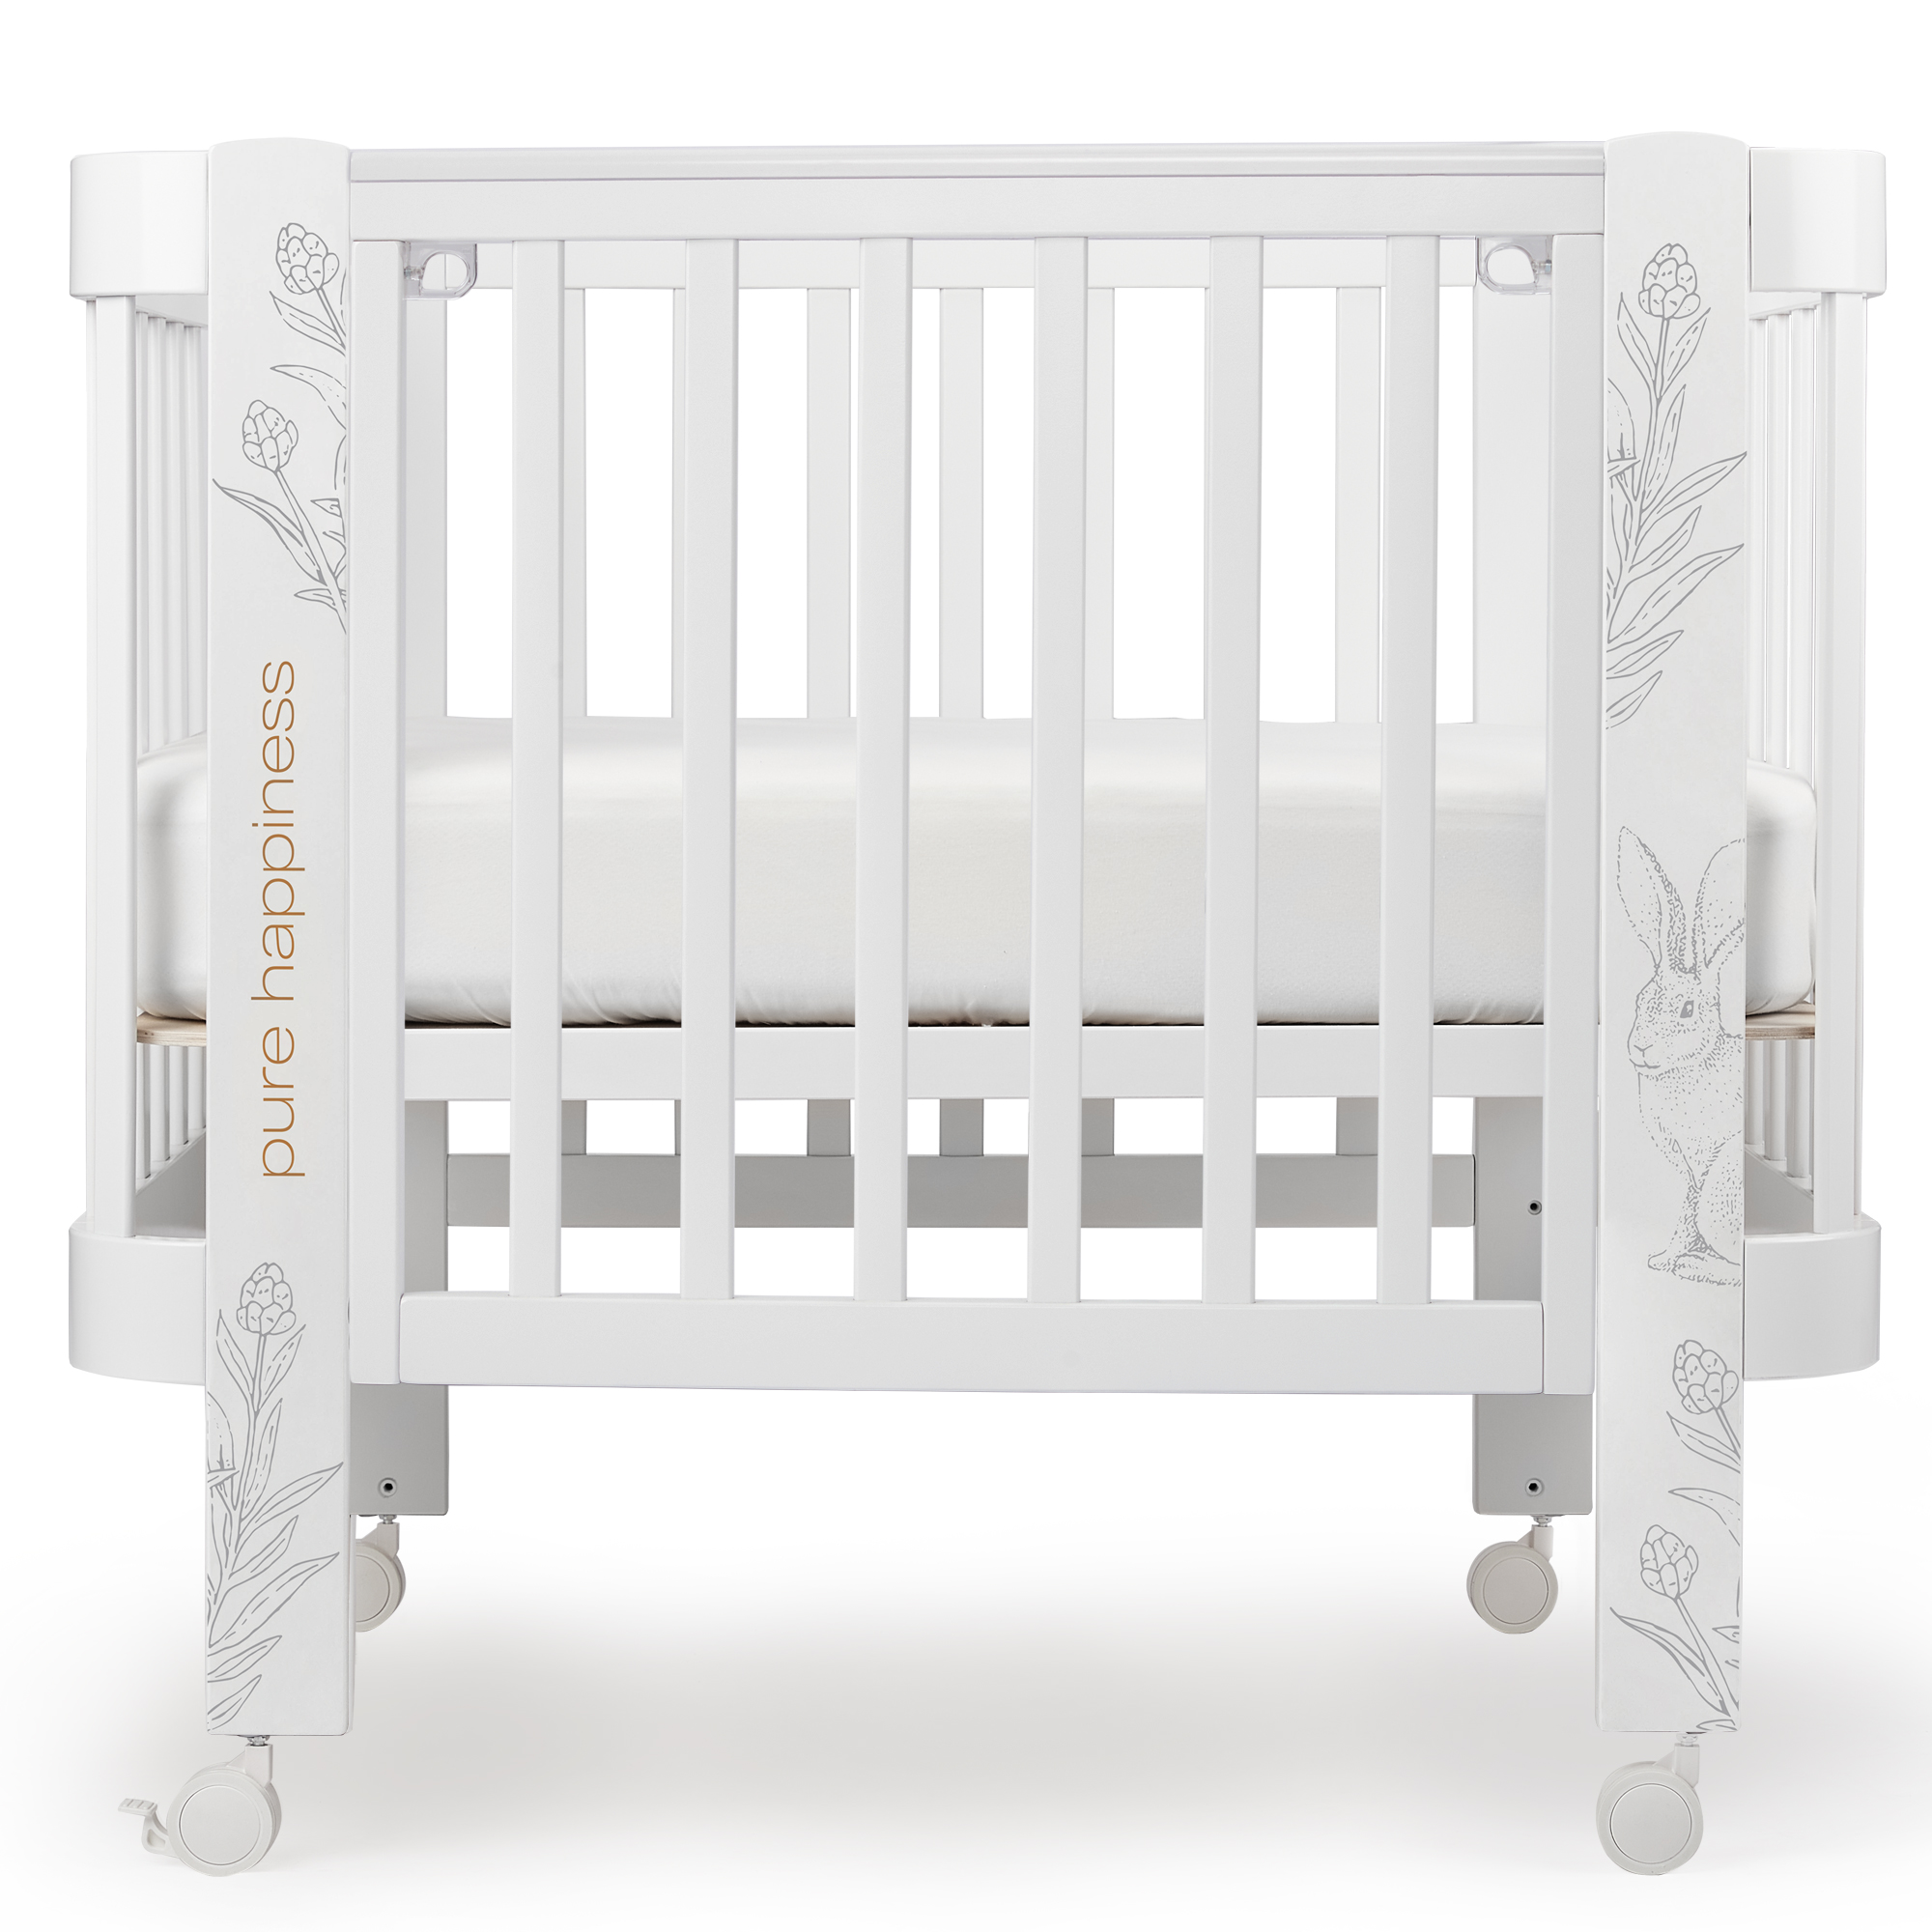 Люлька-кроватка Happy Baby с регулируемой стенкой Mommy Love с маятником, белая